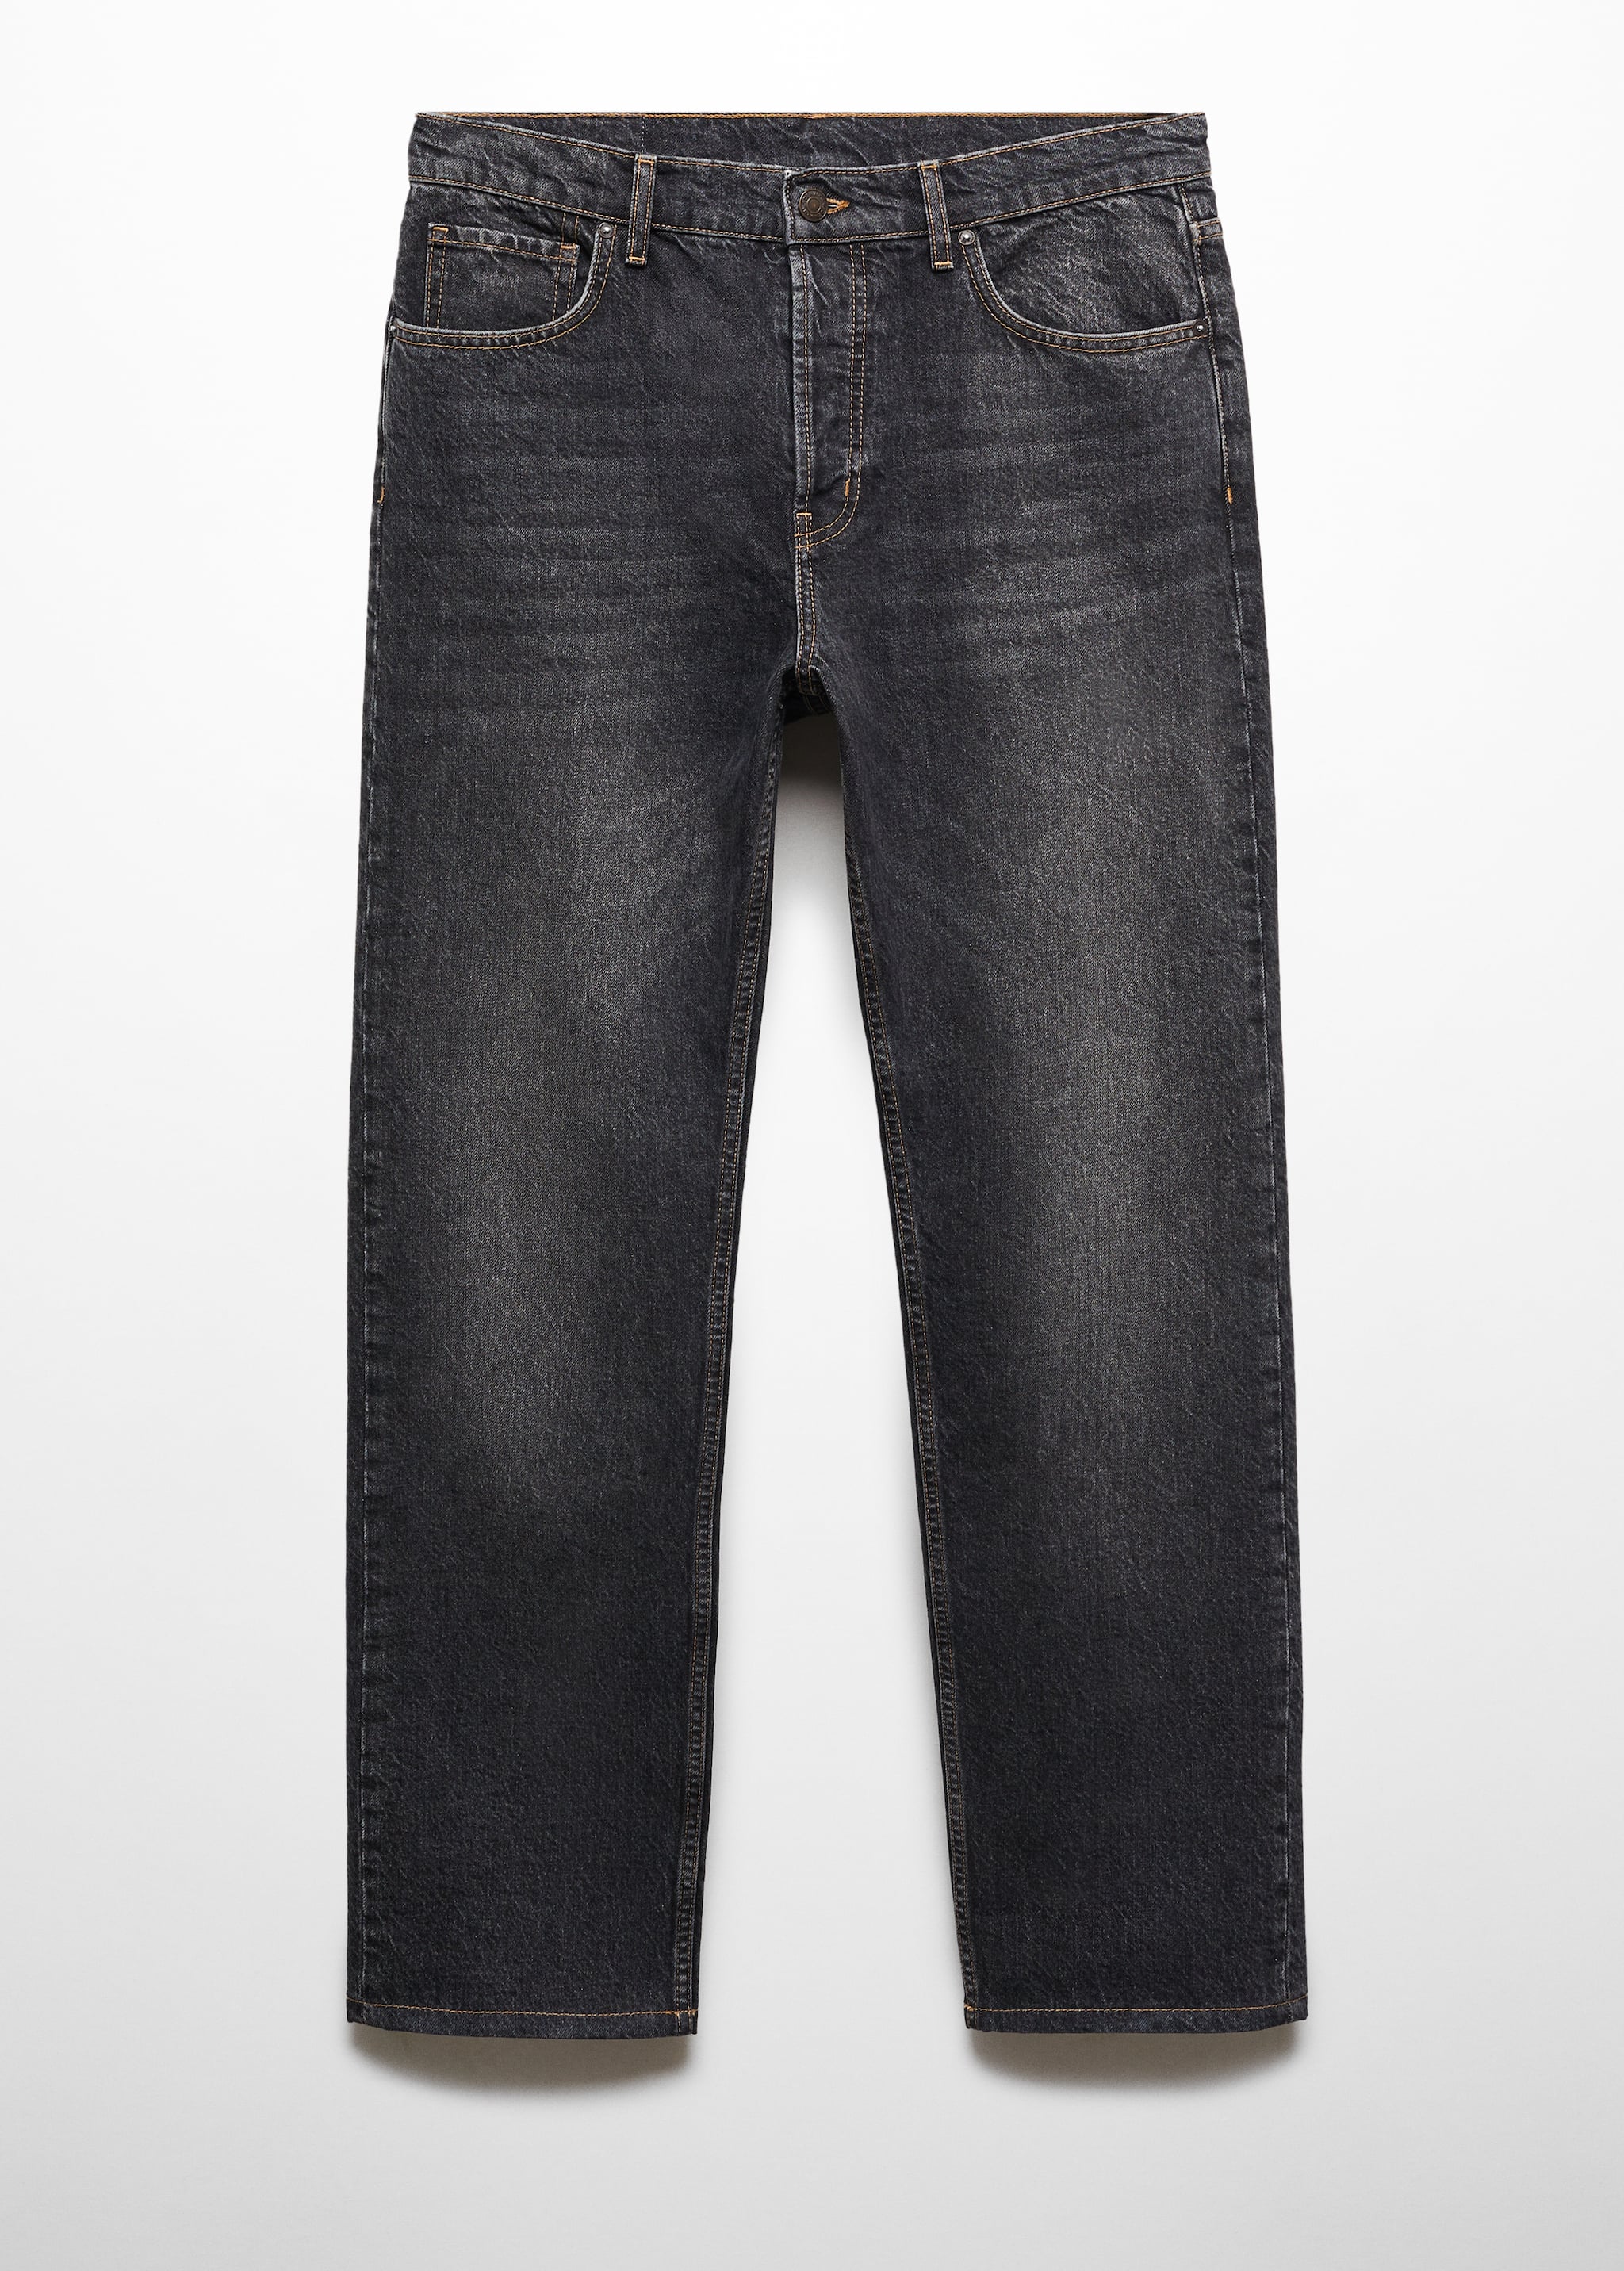 جينز بغسيل داكن ومريح - منتج دون نموذج